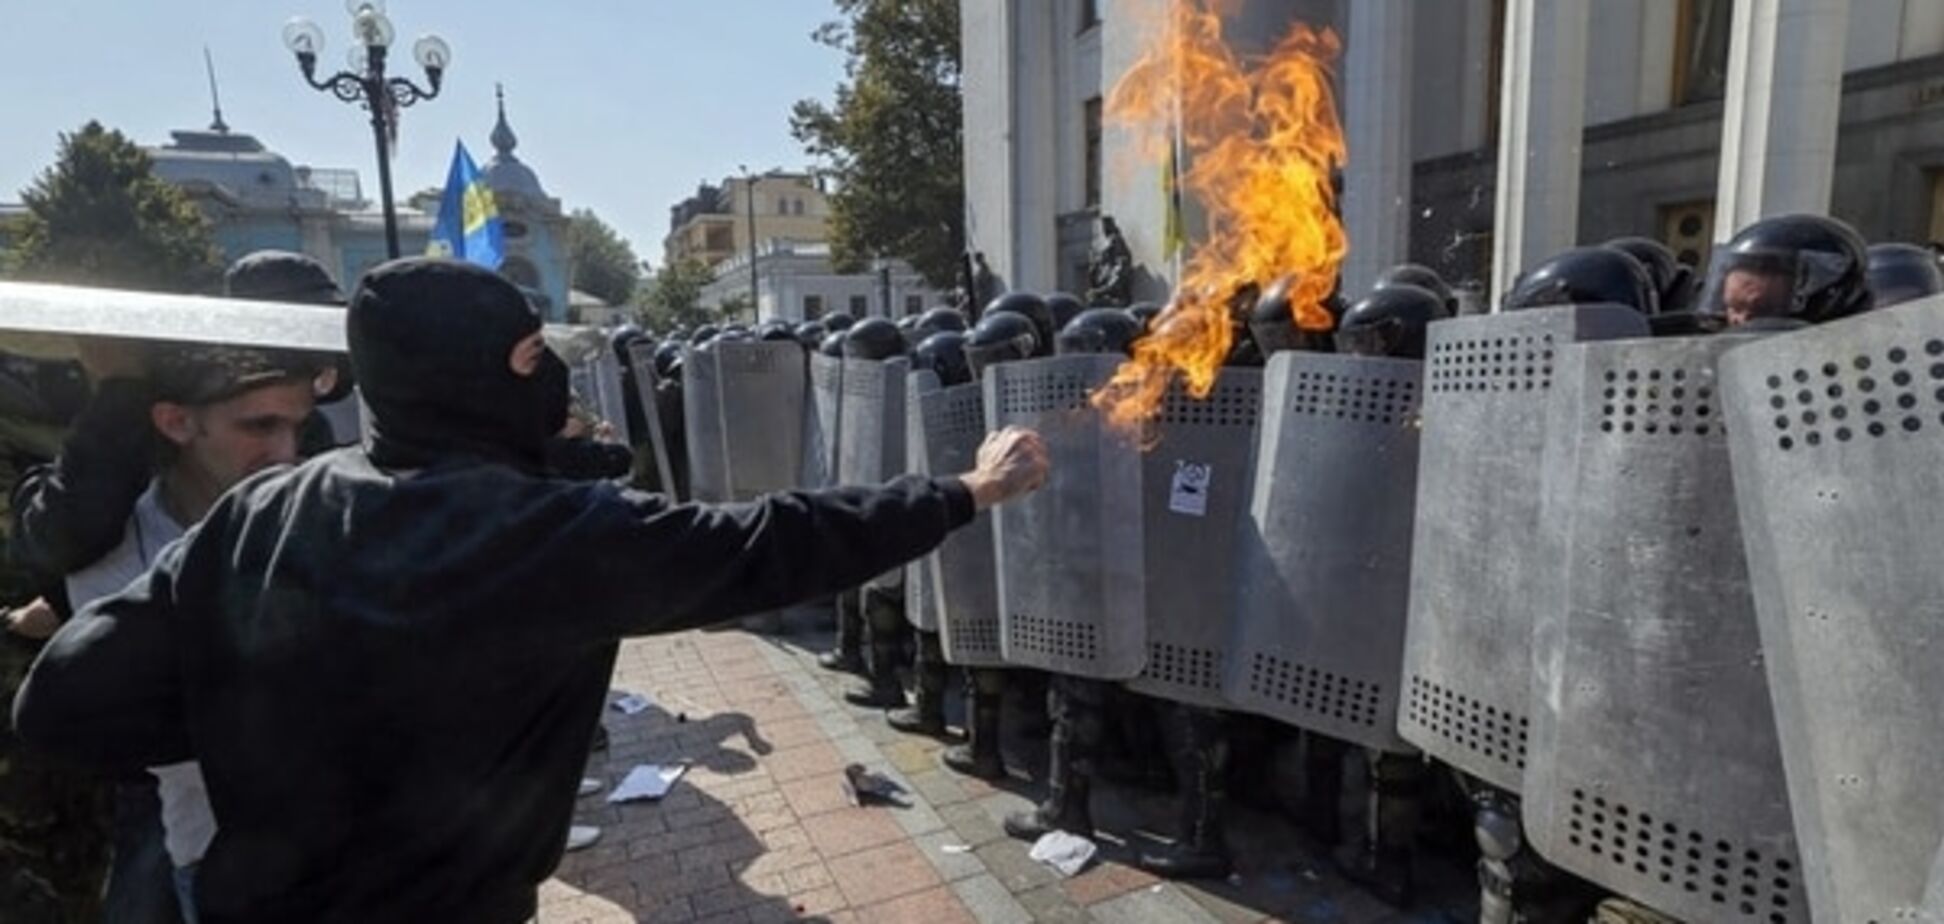 УКРОП: на мітингу під Радою 3 листопада готуються провокації